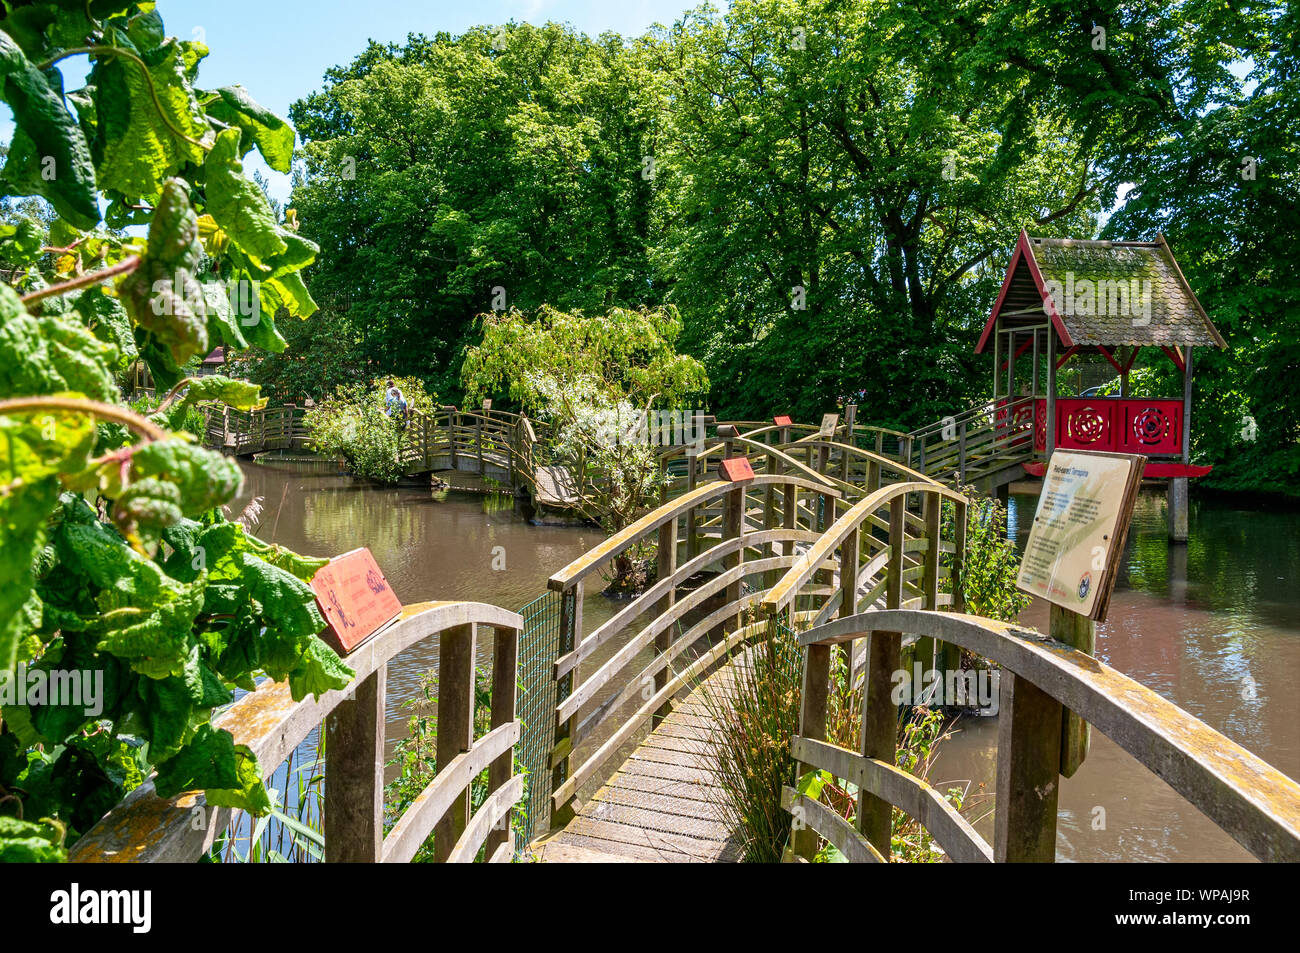 Una serie di legno ponti ad arco con un capanno in centro creare una passerella su un pool di acqua illuminate dal sole da dove visualizzare la flora e la fauna Foto Stock